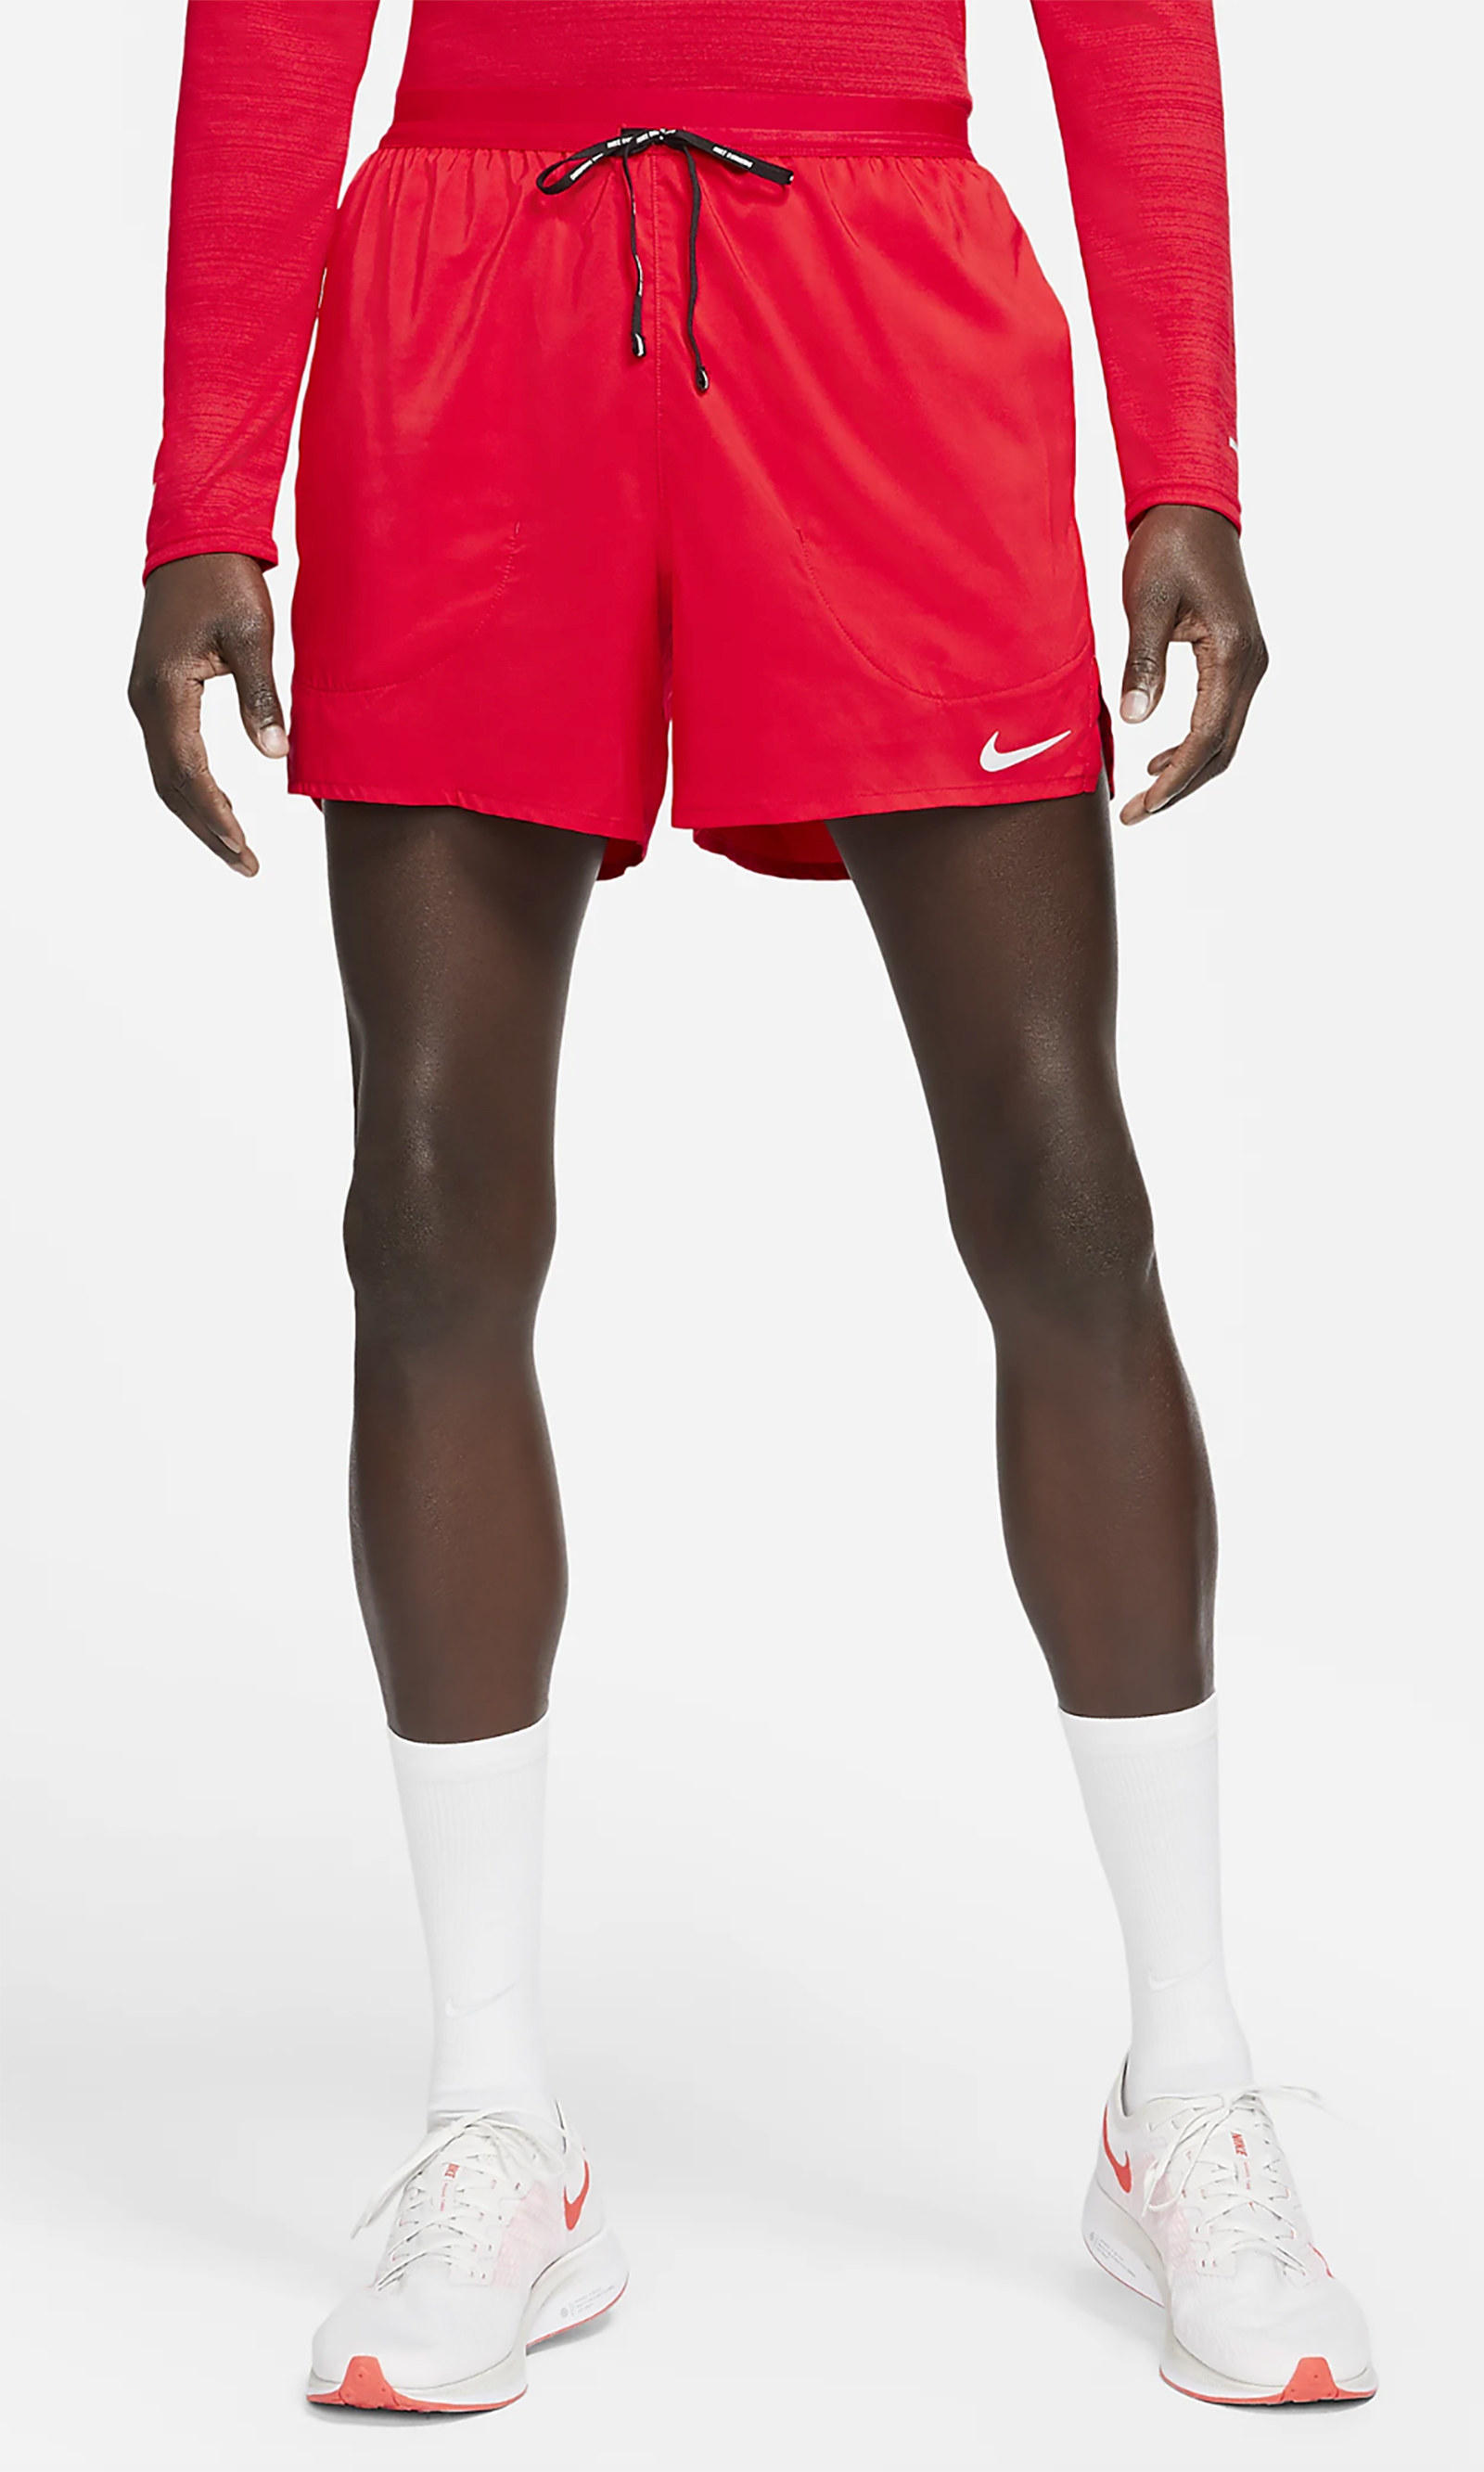 A model wears Nike Flex Stride shorts